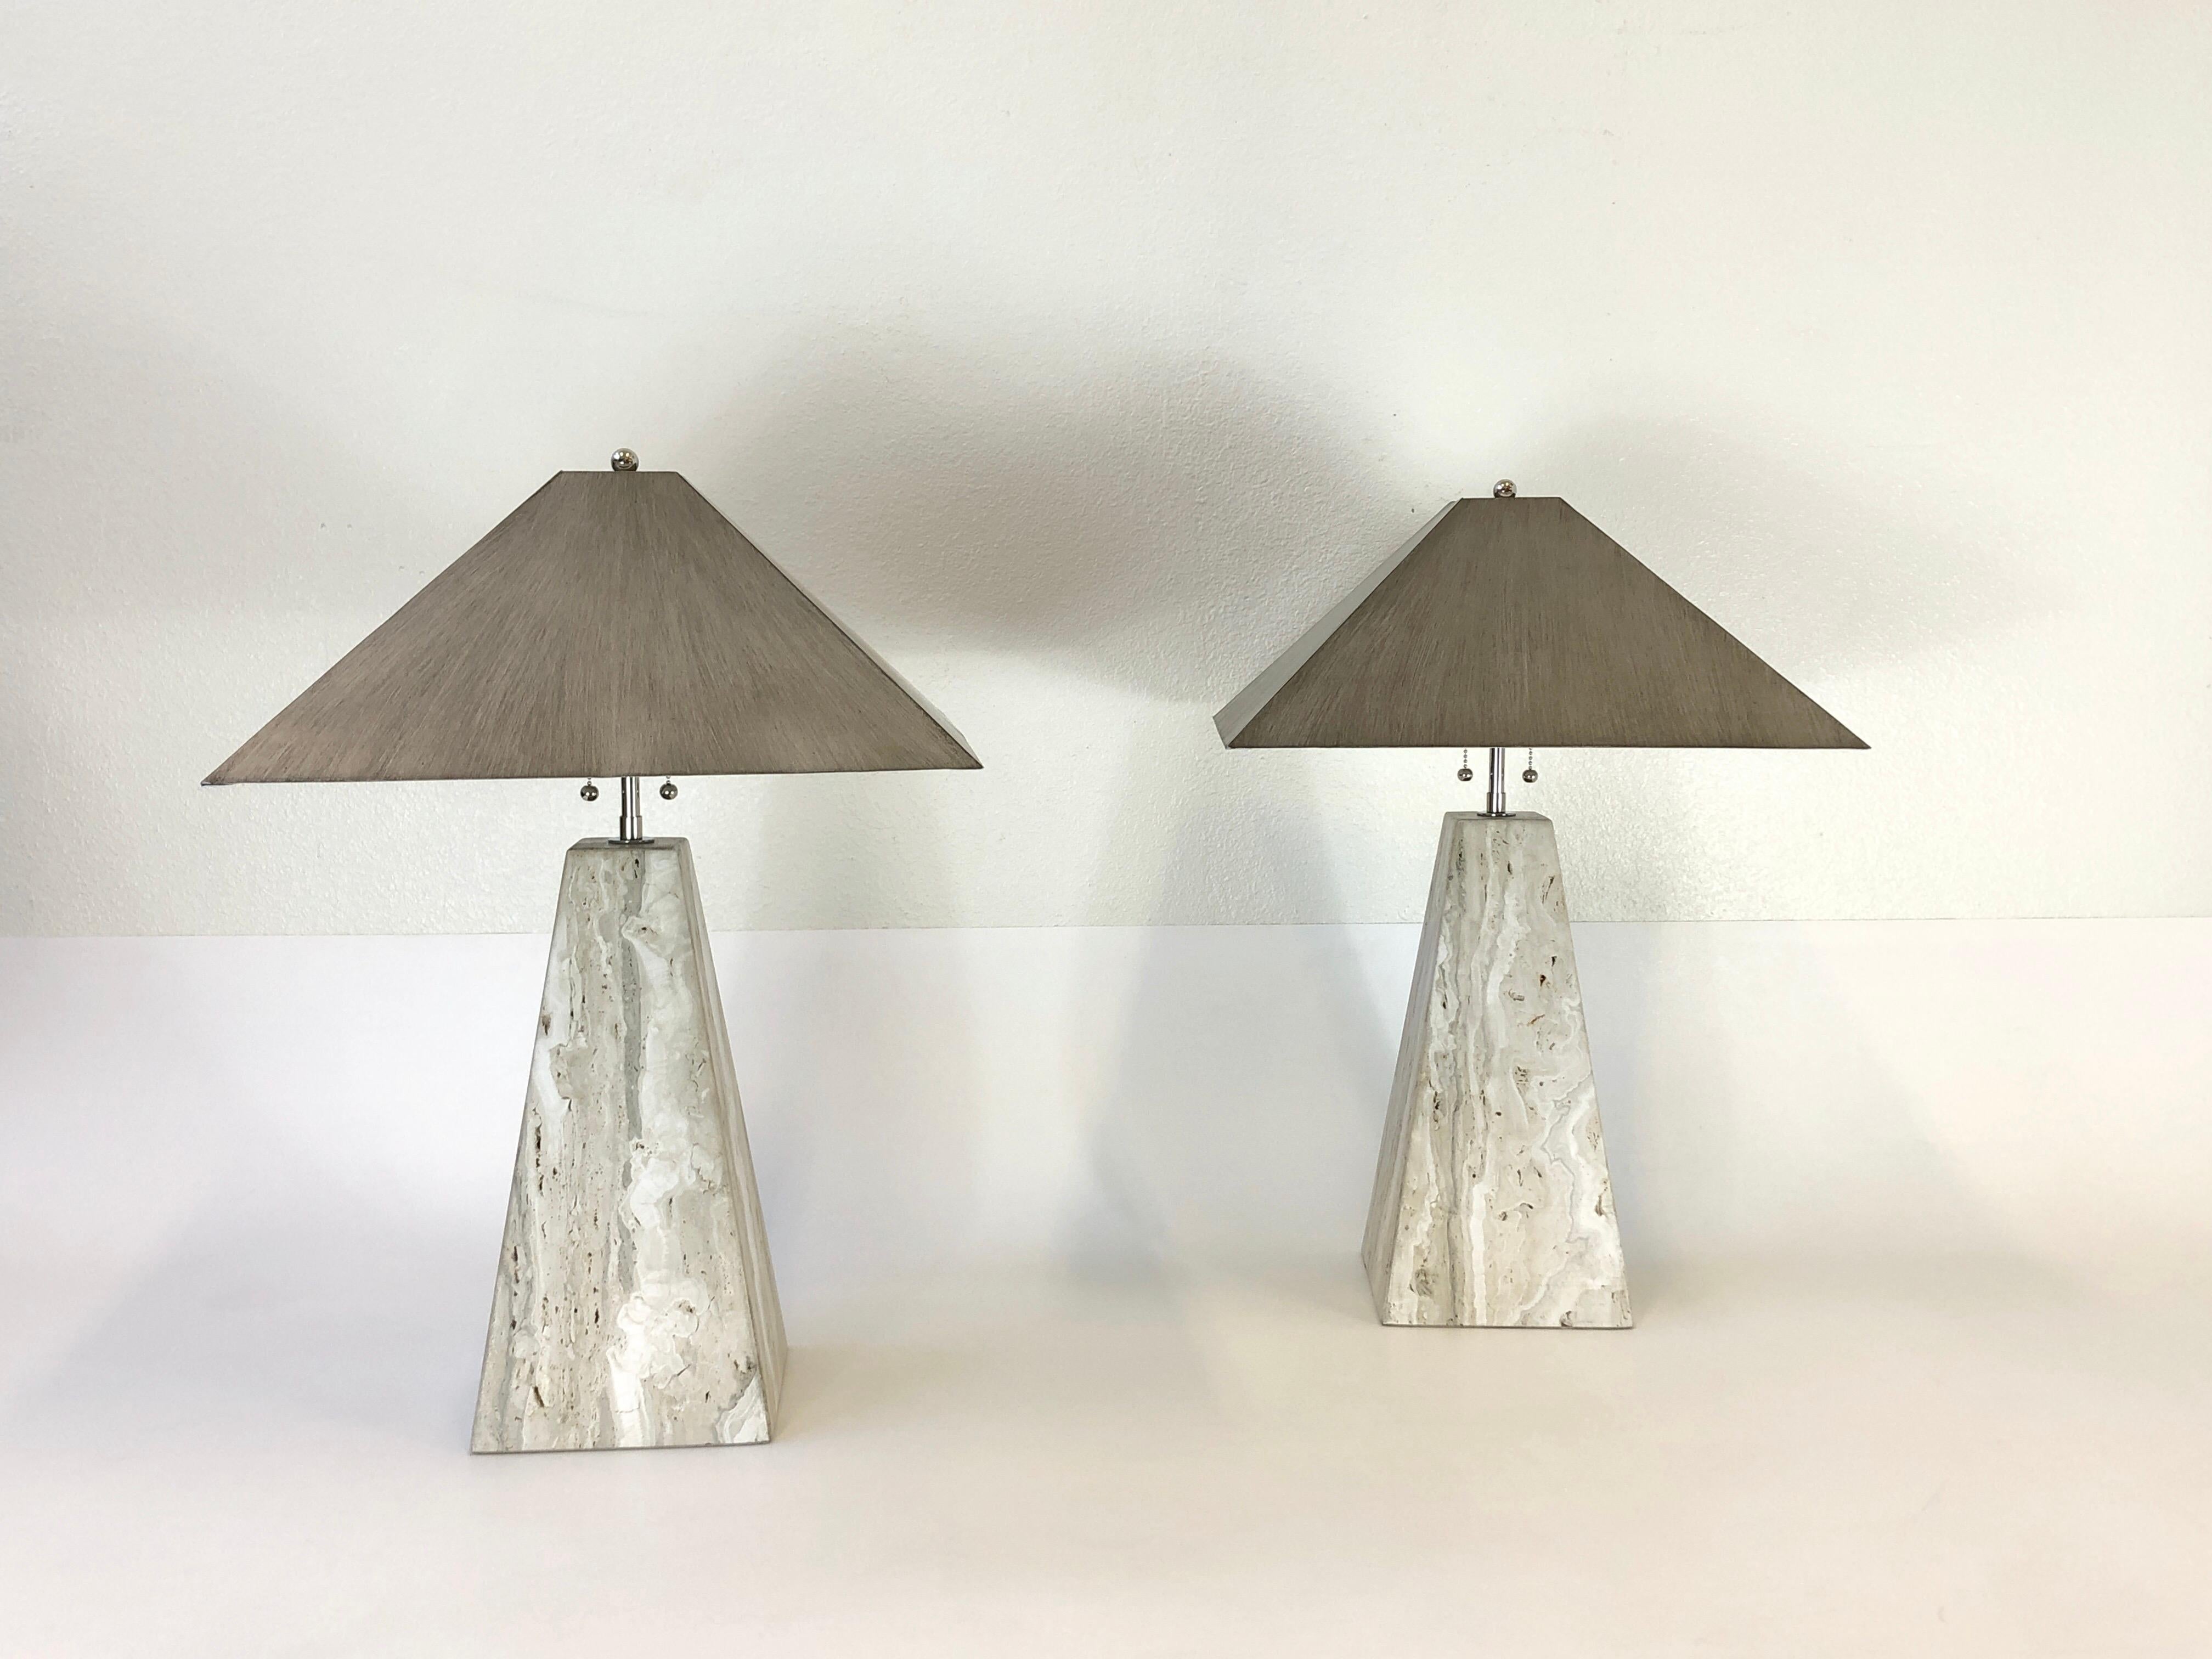 Ein spektakuläres Paar italienischer Travertin-Tischlampen aus den 1970er Jahren in Form eines Obelisken. Neu verkabelt mit neuen polnischen Nickel-Beschlägen. Die Schirme sind aus Metall und lackiert (siehe Detailfotos). Beide Lampen sind mit H.R.